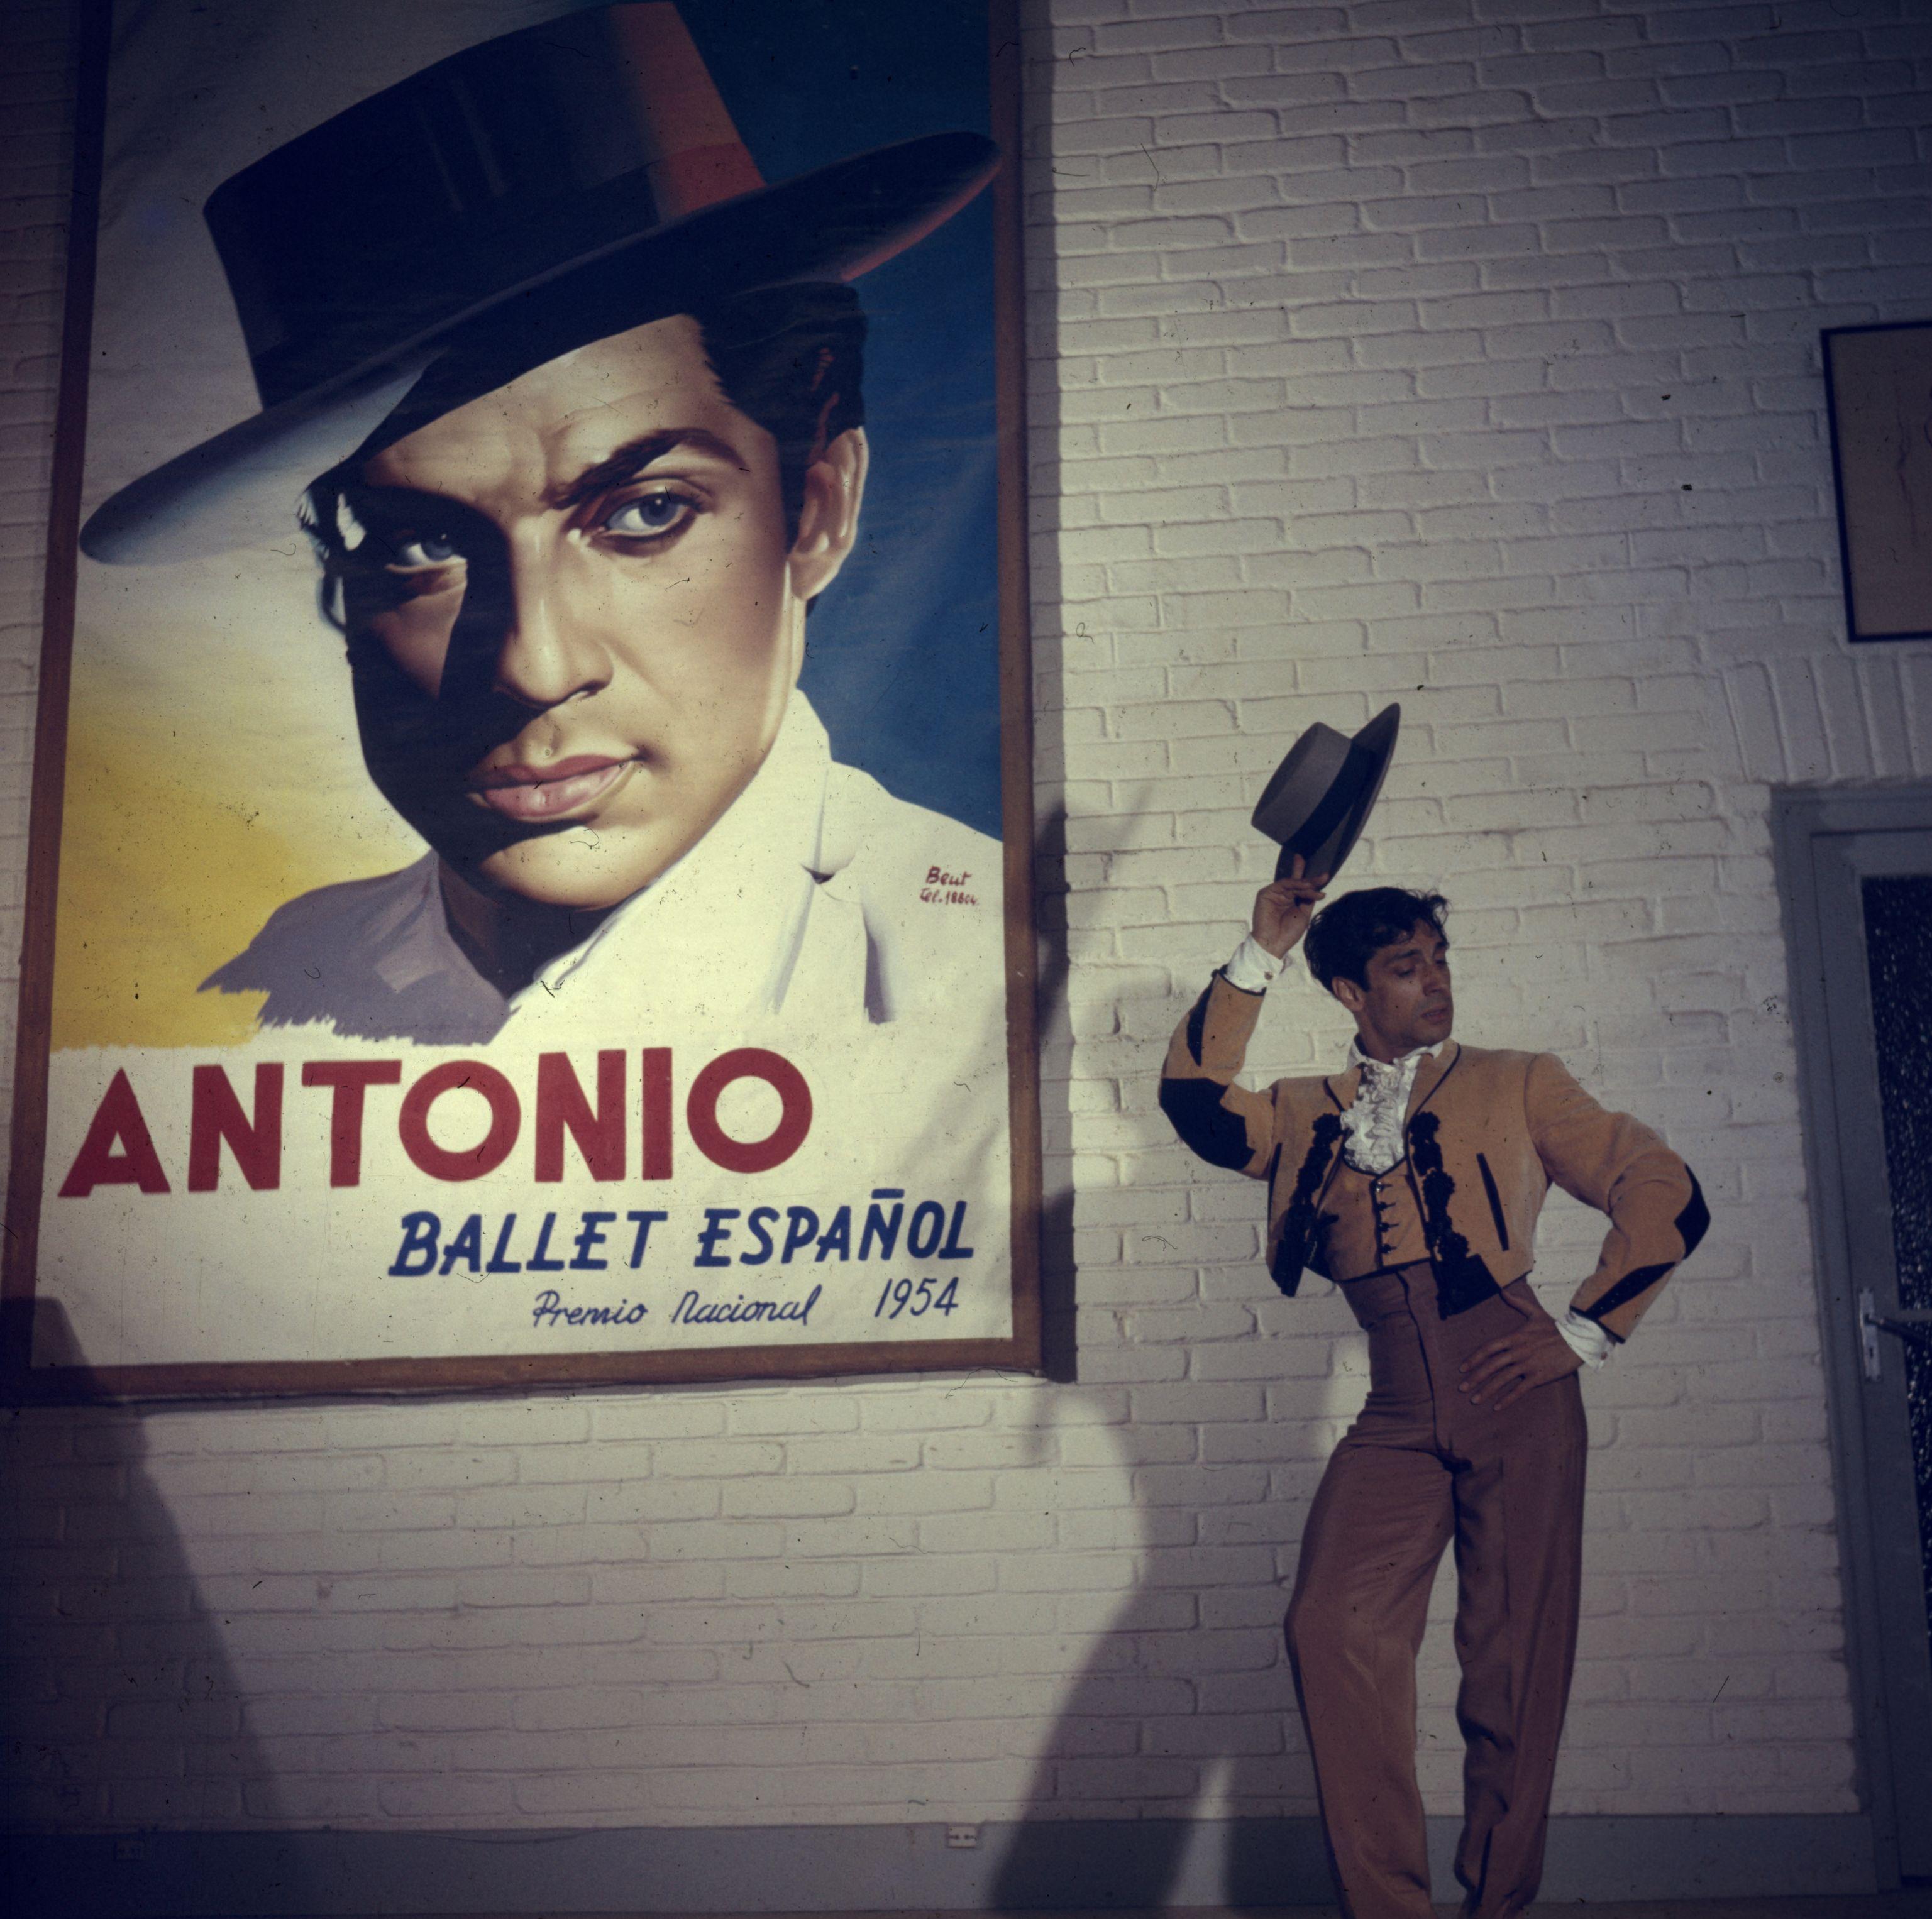 Ein Flamenco-Tänzer lüftet seinen Hut vor einem Plakat, das für den virtuosen Tänzer Antonio (Antonio Ruiz Soler) in der nationalen Premiere von "Ballet Espanol" wirbt. (Foto: Slim Aarons/Getty Images)

Schlanke Aarons
Antonio Ruiz Soler
Chromogener